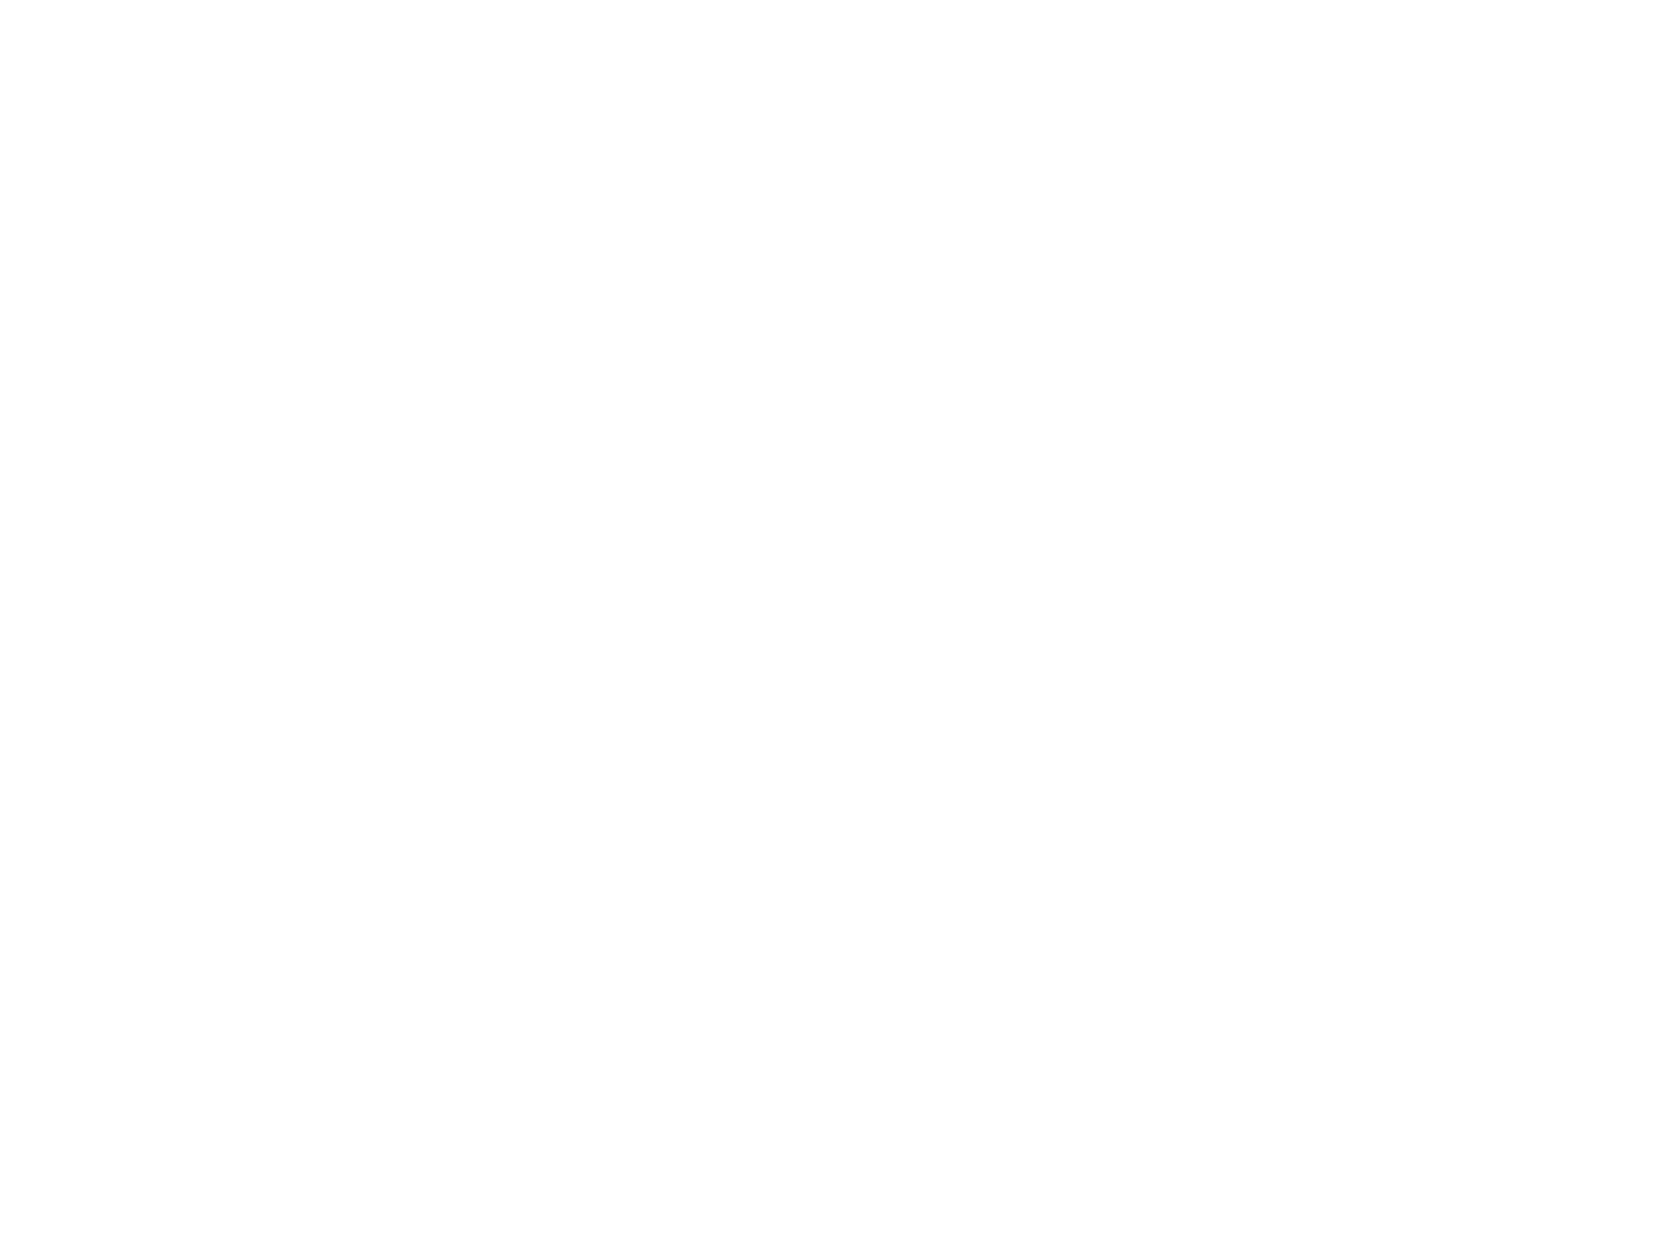 Настольные ламповые часы на газоразрядных индикаторах ИН-12. Часы в корпусе из массива дуба украшены шпоном зебрано и латунной фурнитурой